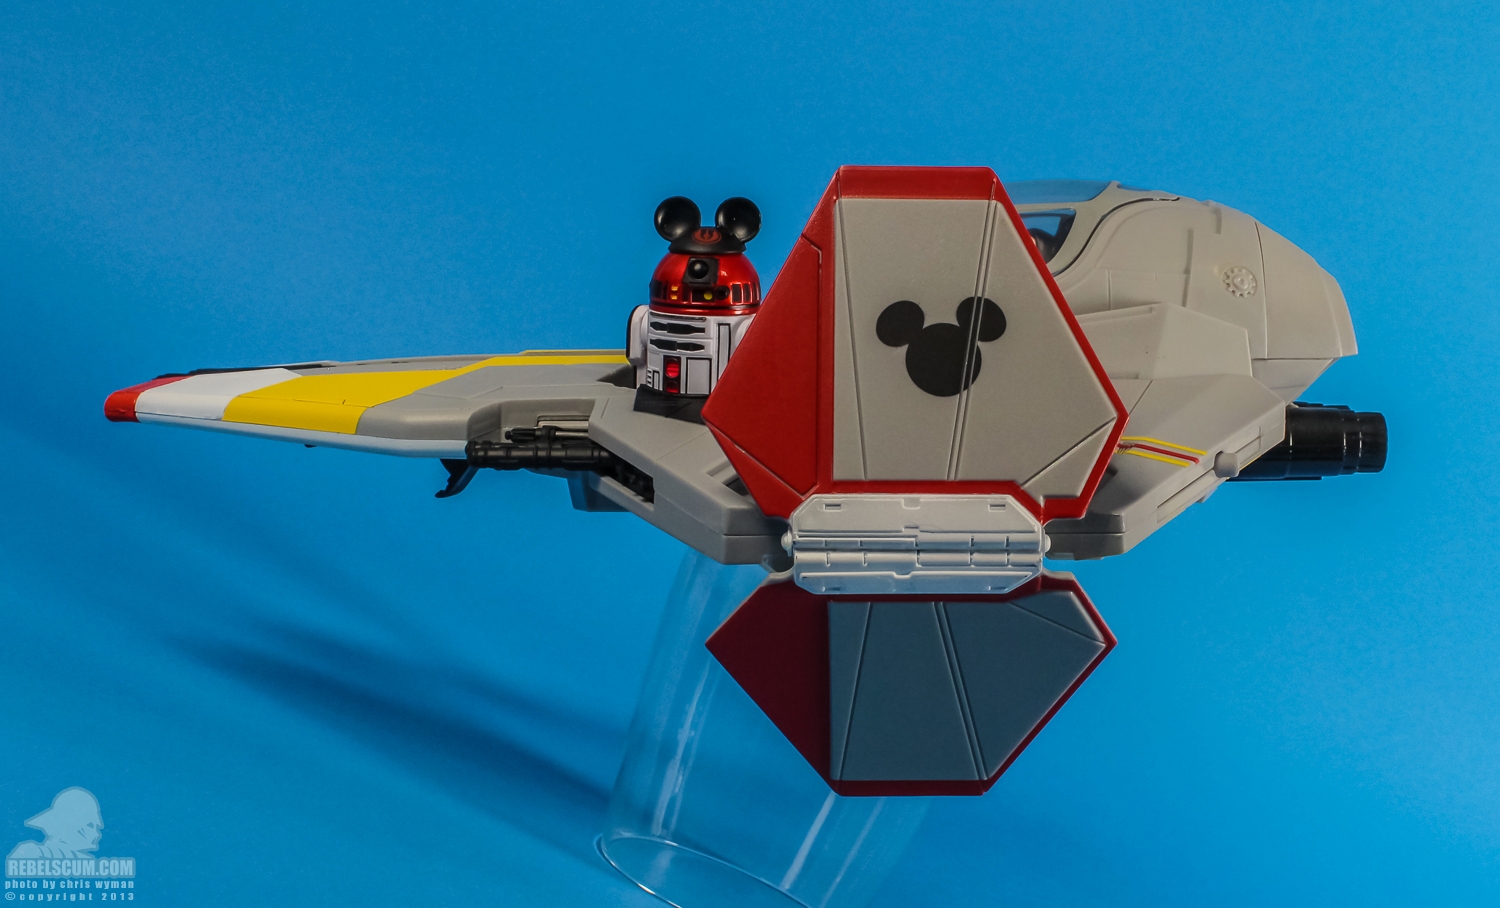 Disney_Parks_Jedi_Mickeys_Starfighter_Hasbro-24.jpg